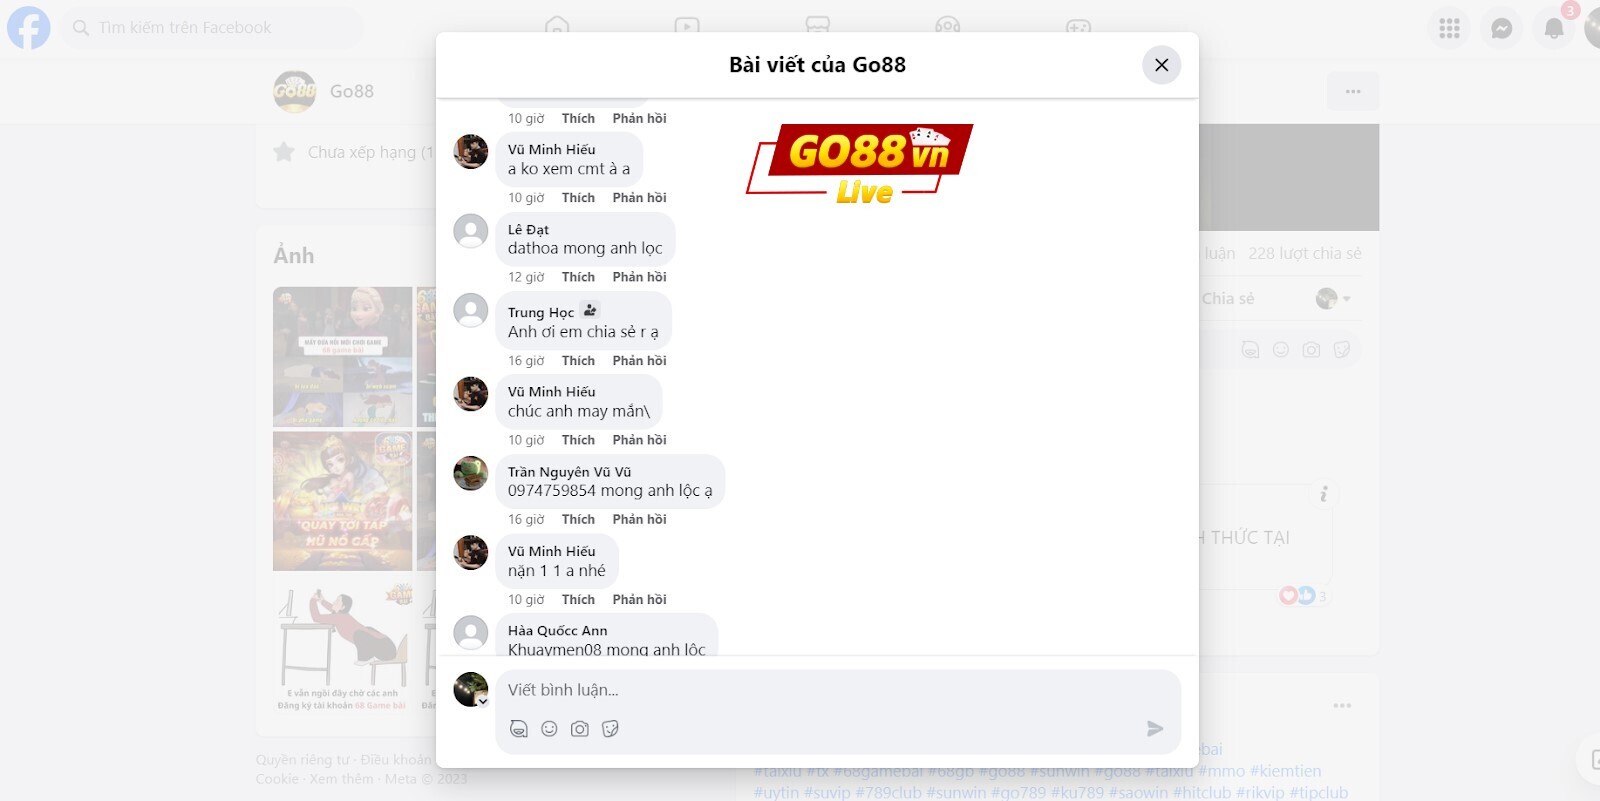 Go88 được nhiều anh em bàn luận trên nền tảng Facebook 